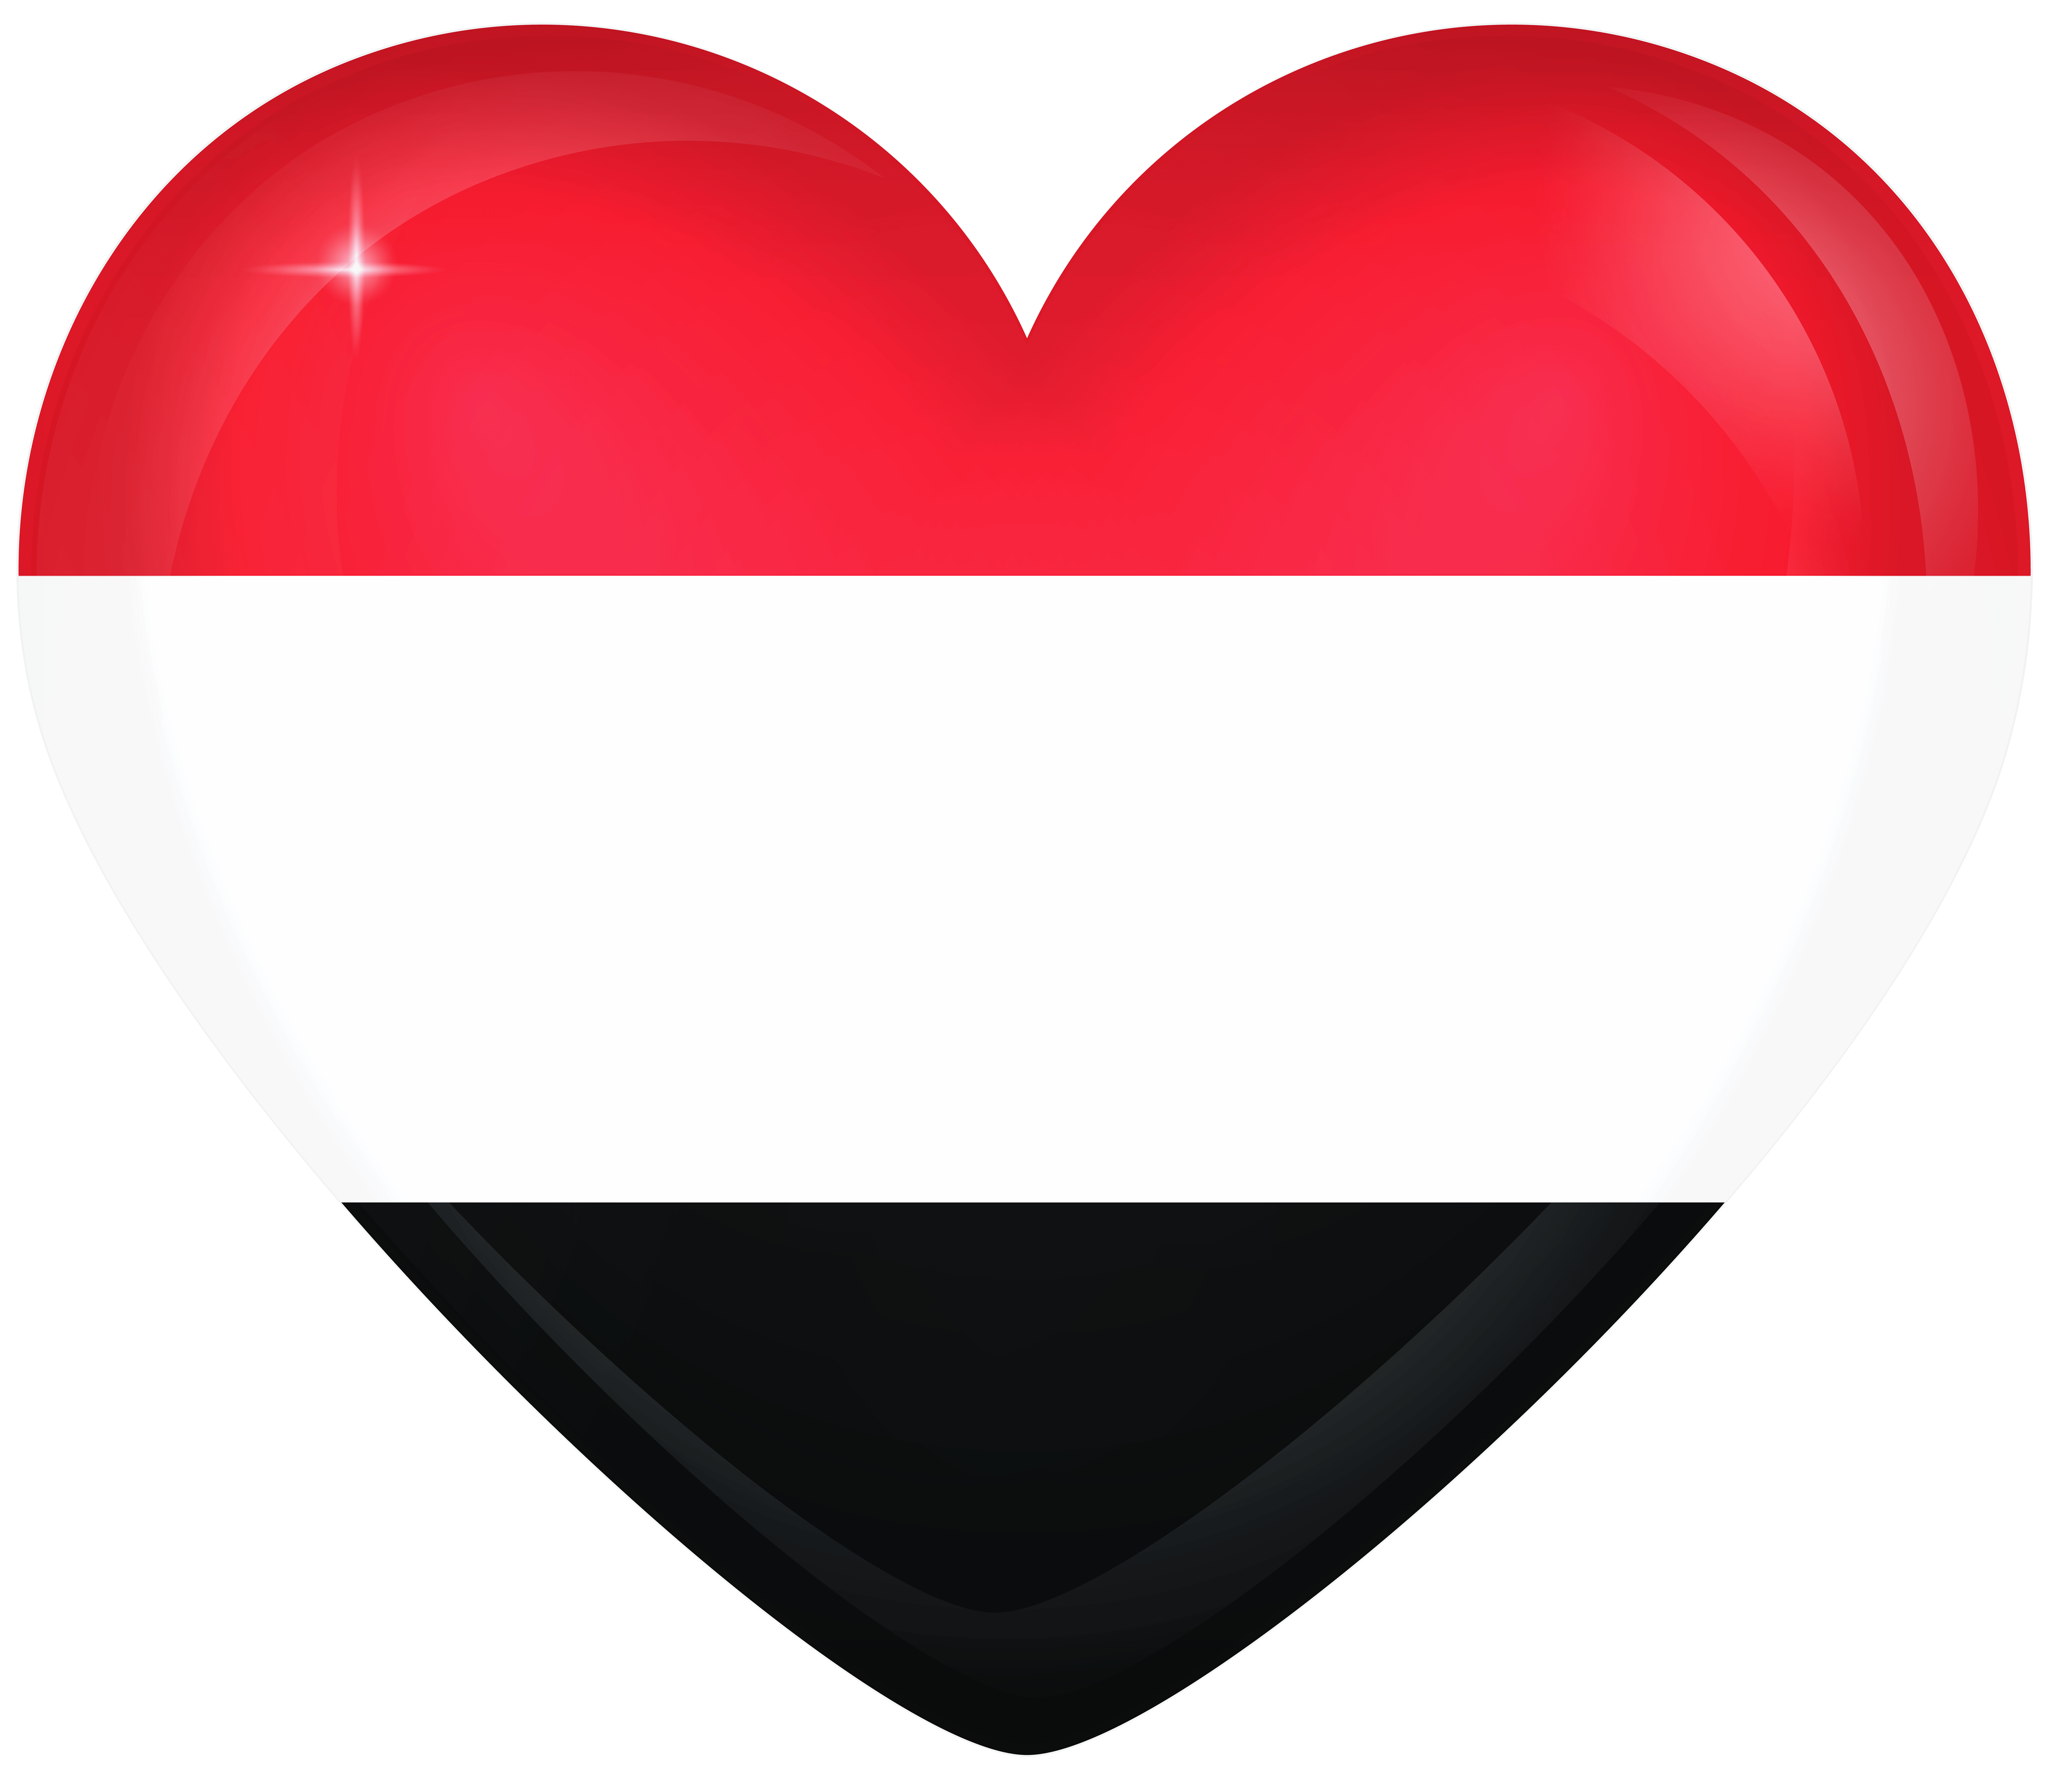 Yemen Large Heart Flag Quality Image